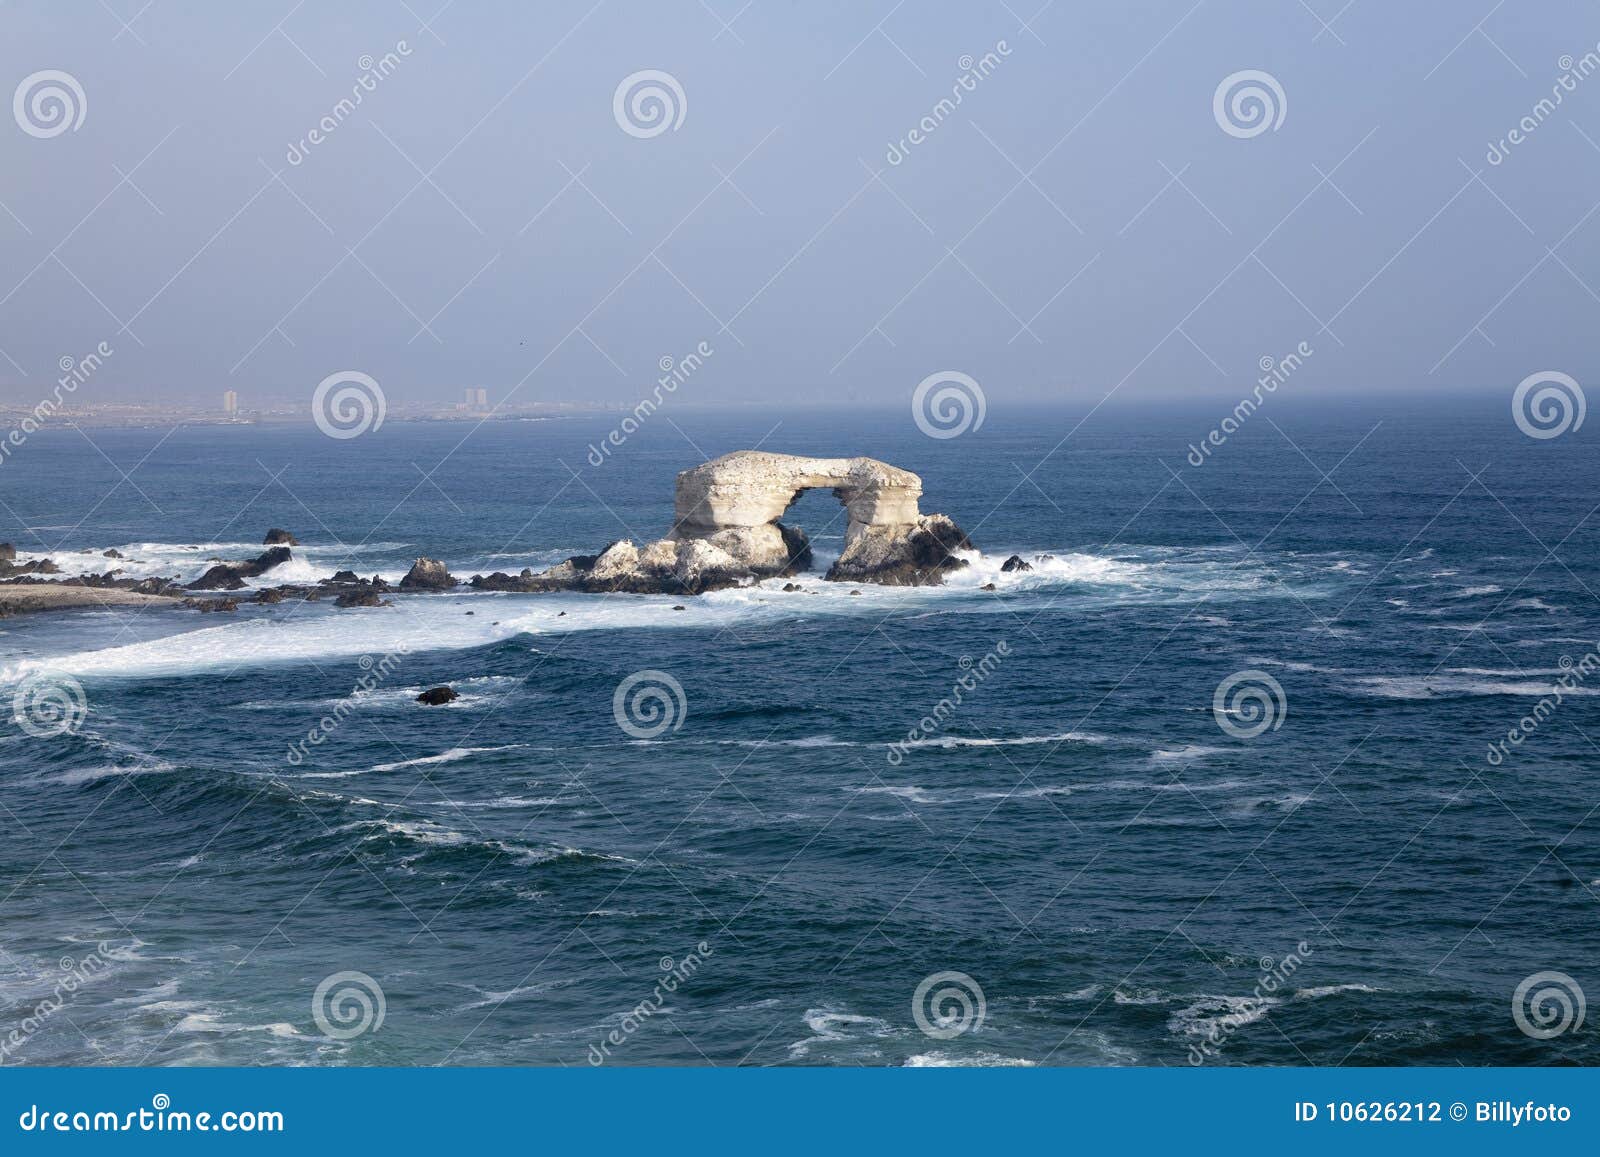 antofagasta coast in chile